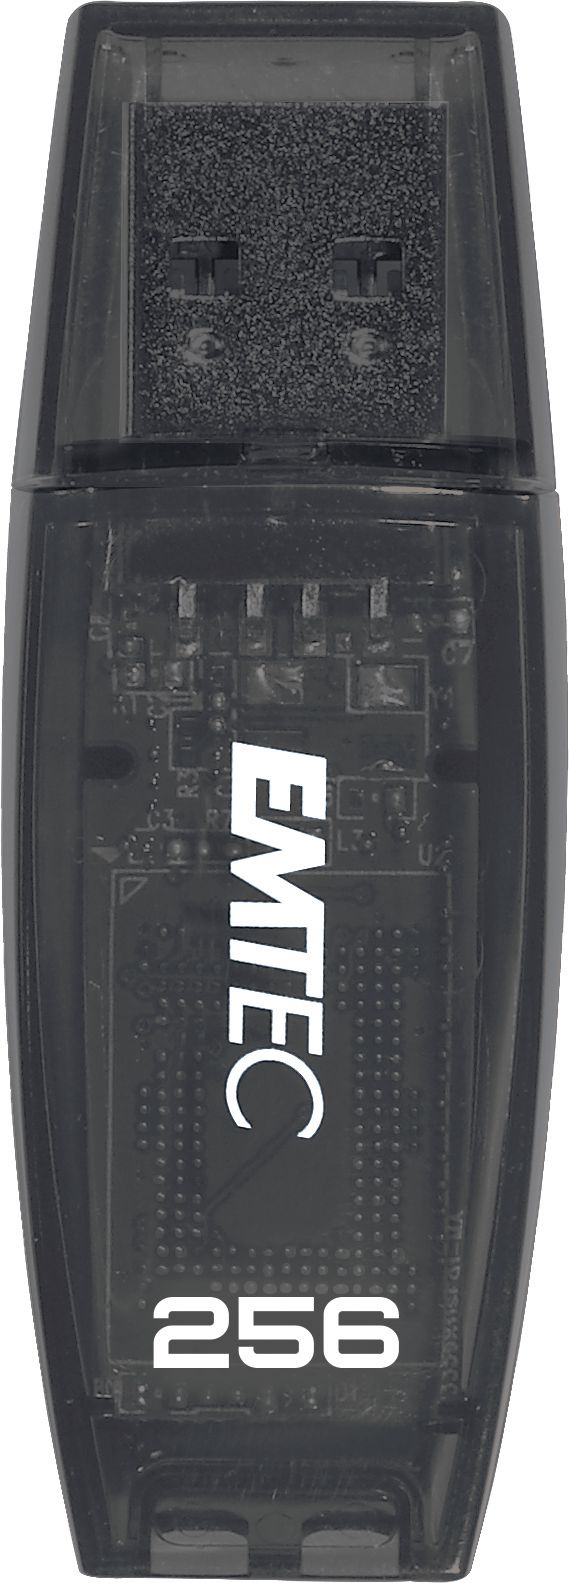 Emtec 256GB C410 USB 3.0 Color Mix28 - W128215328